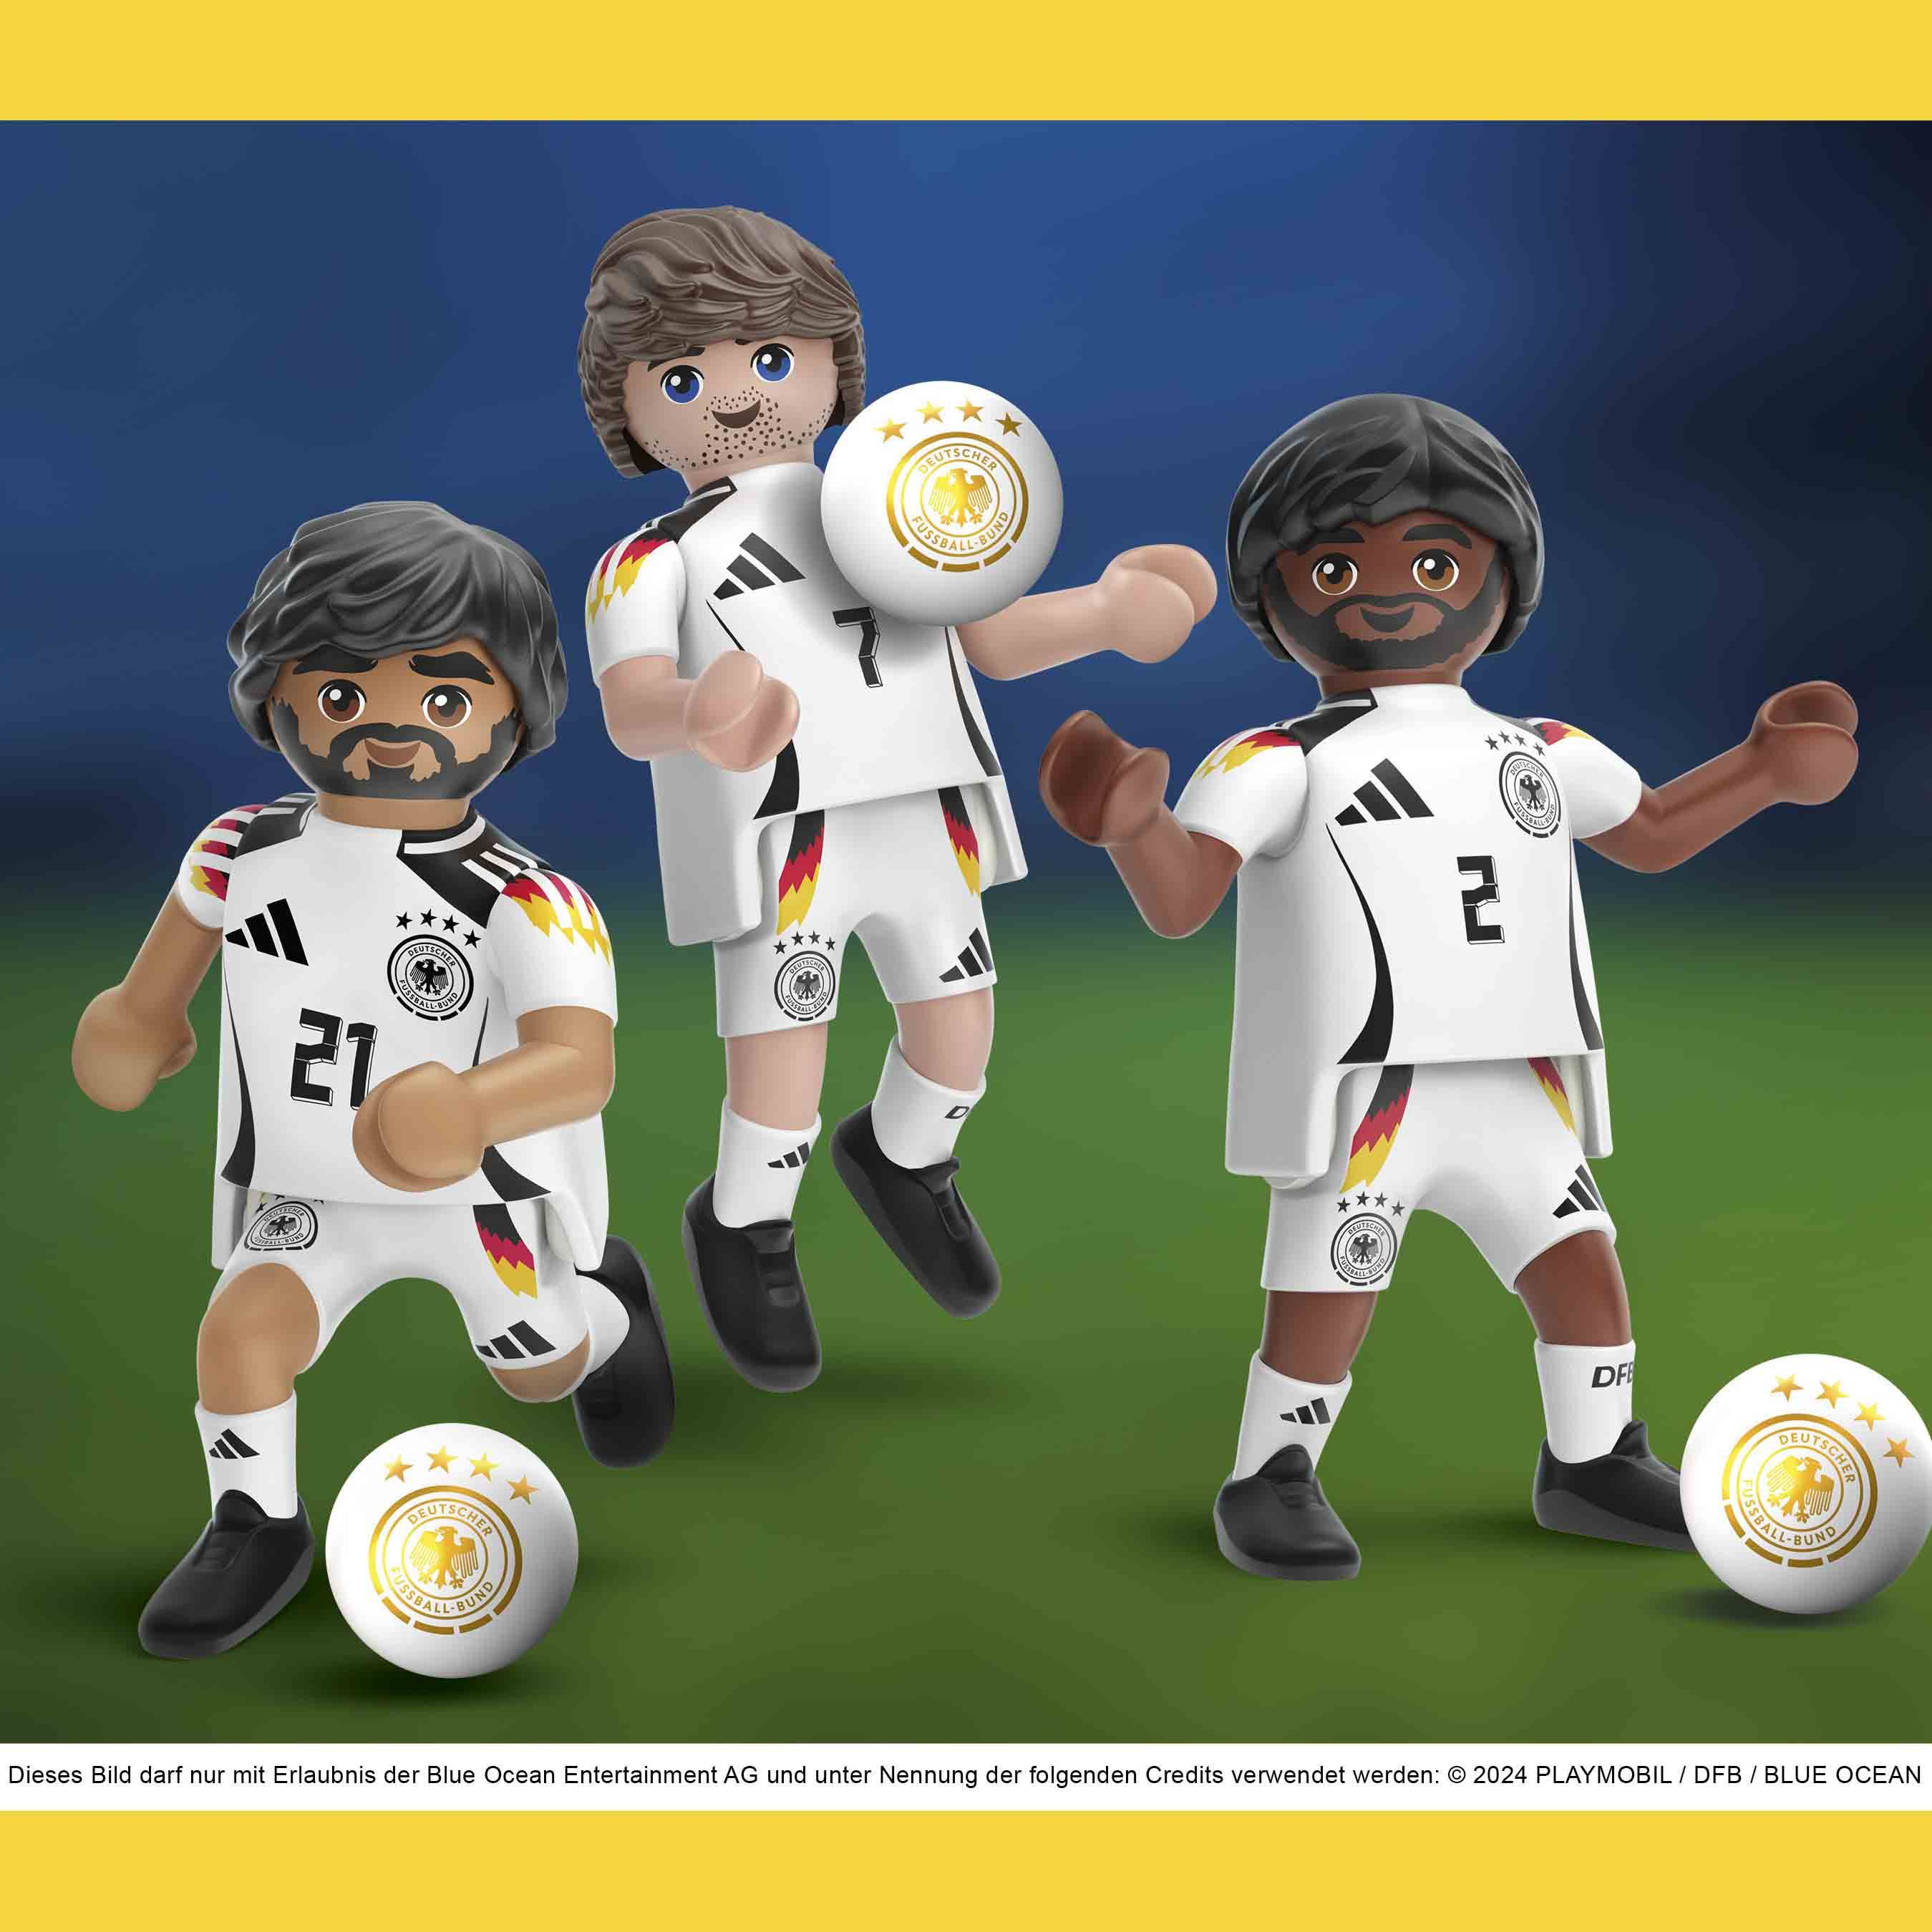 PLAYMOBIL bringt die deutsche Männer-Nationalmannschaft ins Kinderzimmer